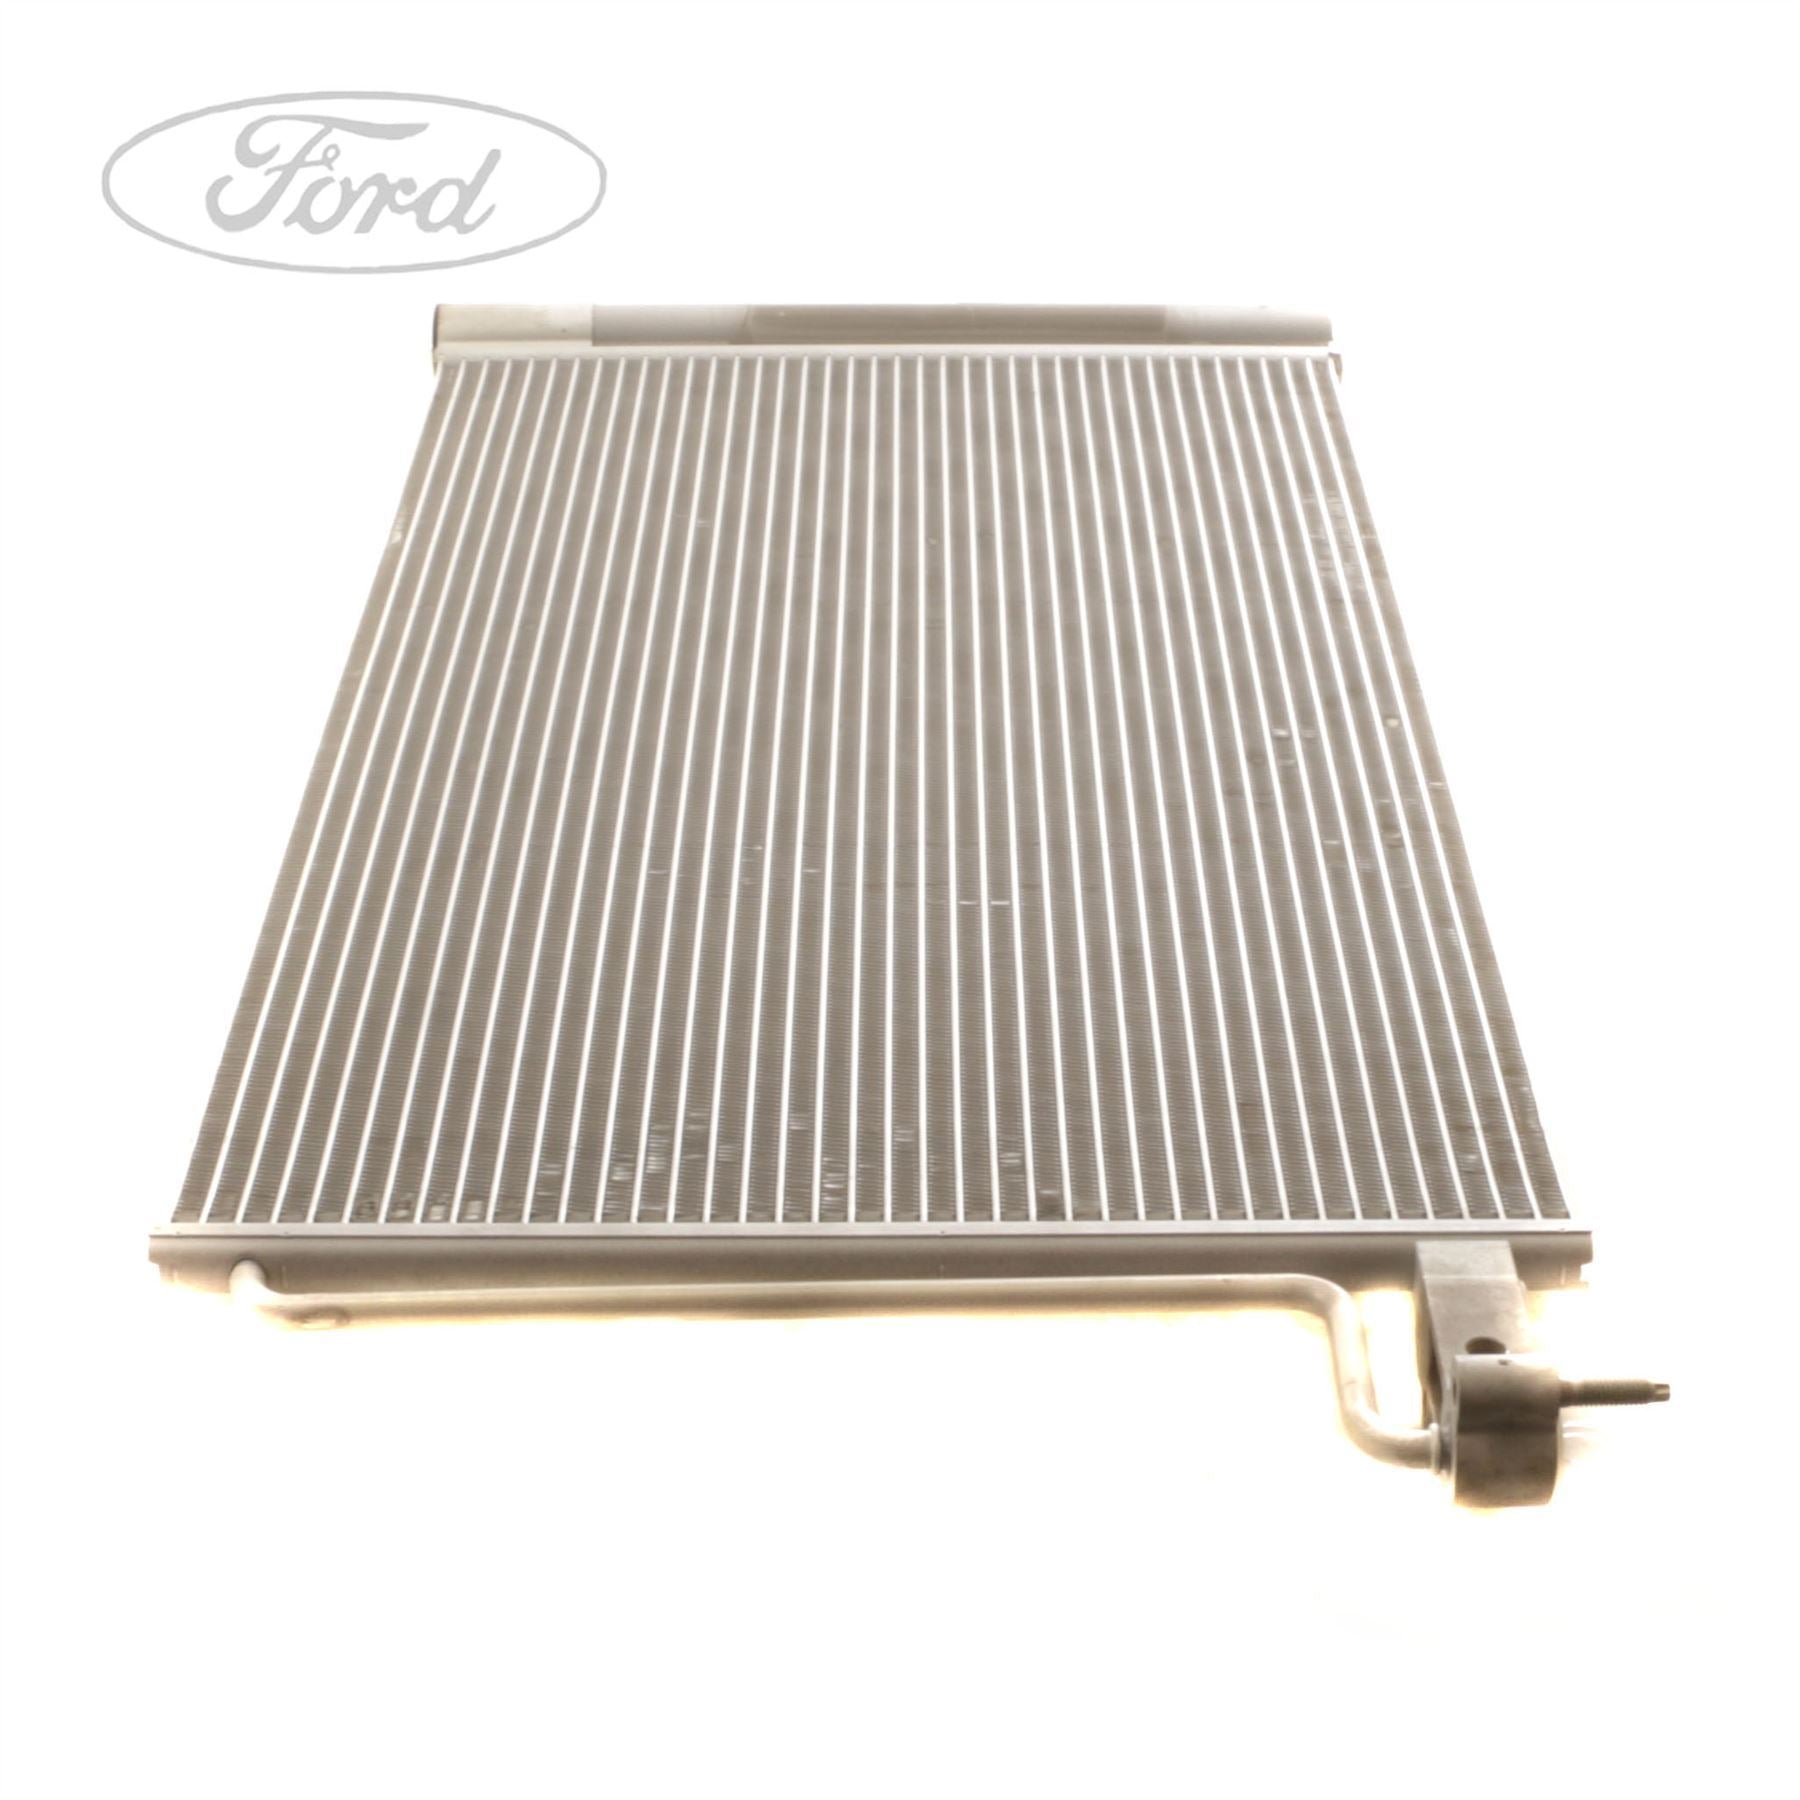 Ford Teile für Klimaanlage & Heizung, Kompressoren & mehr, Seite 2